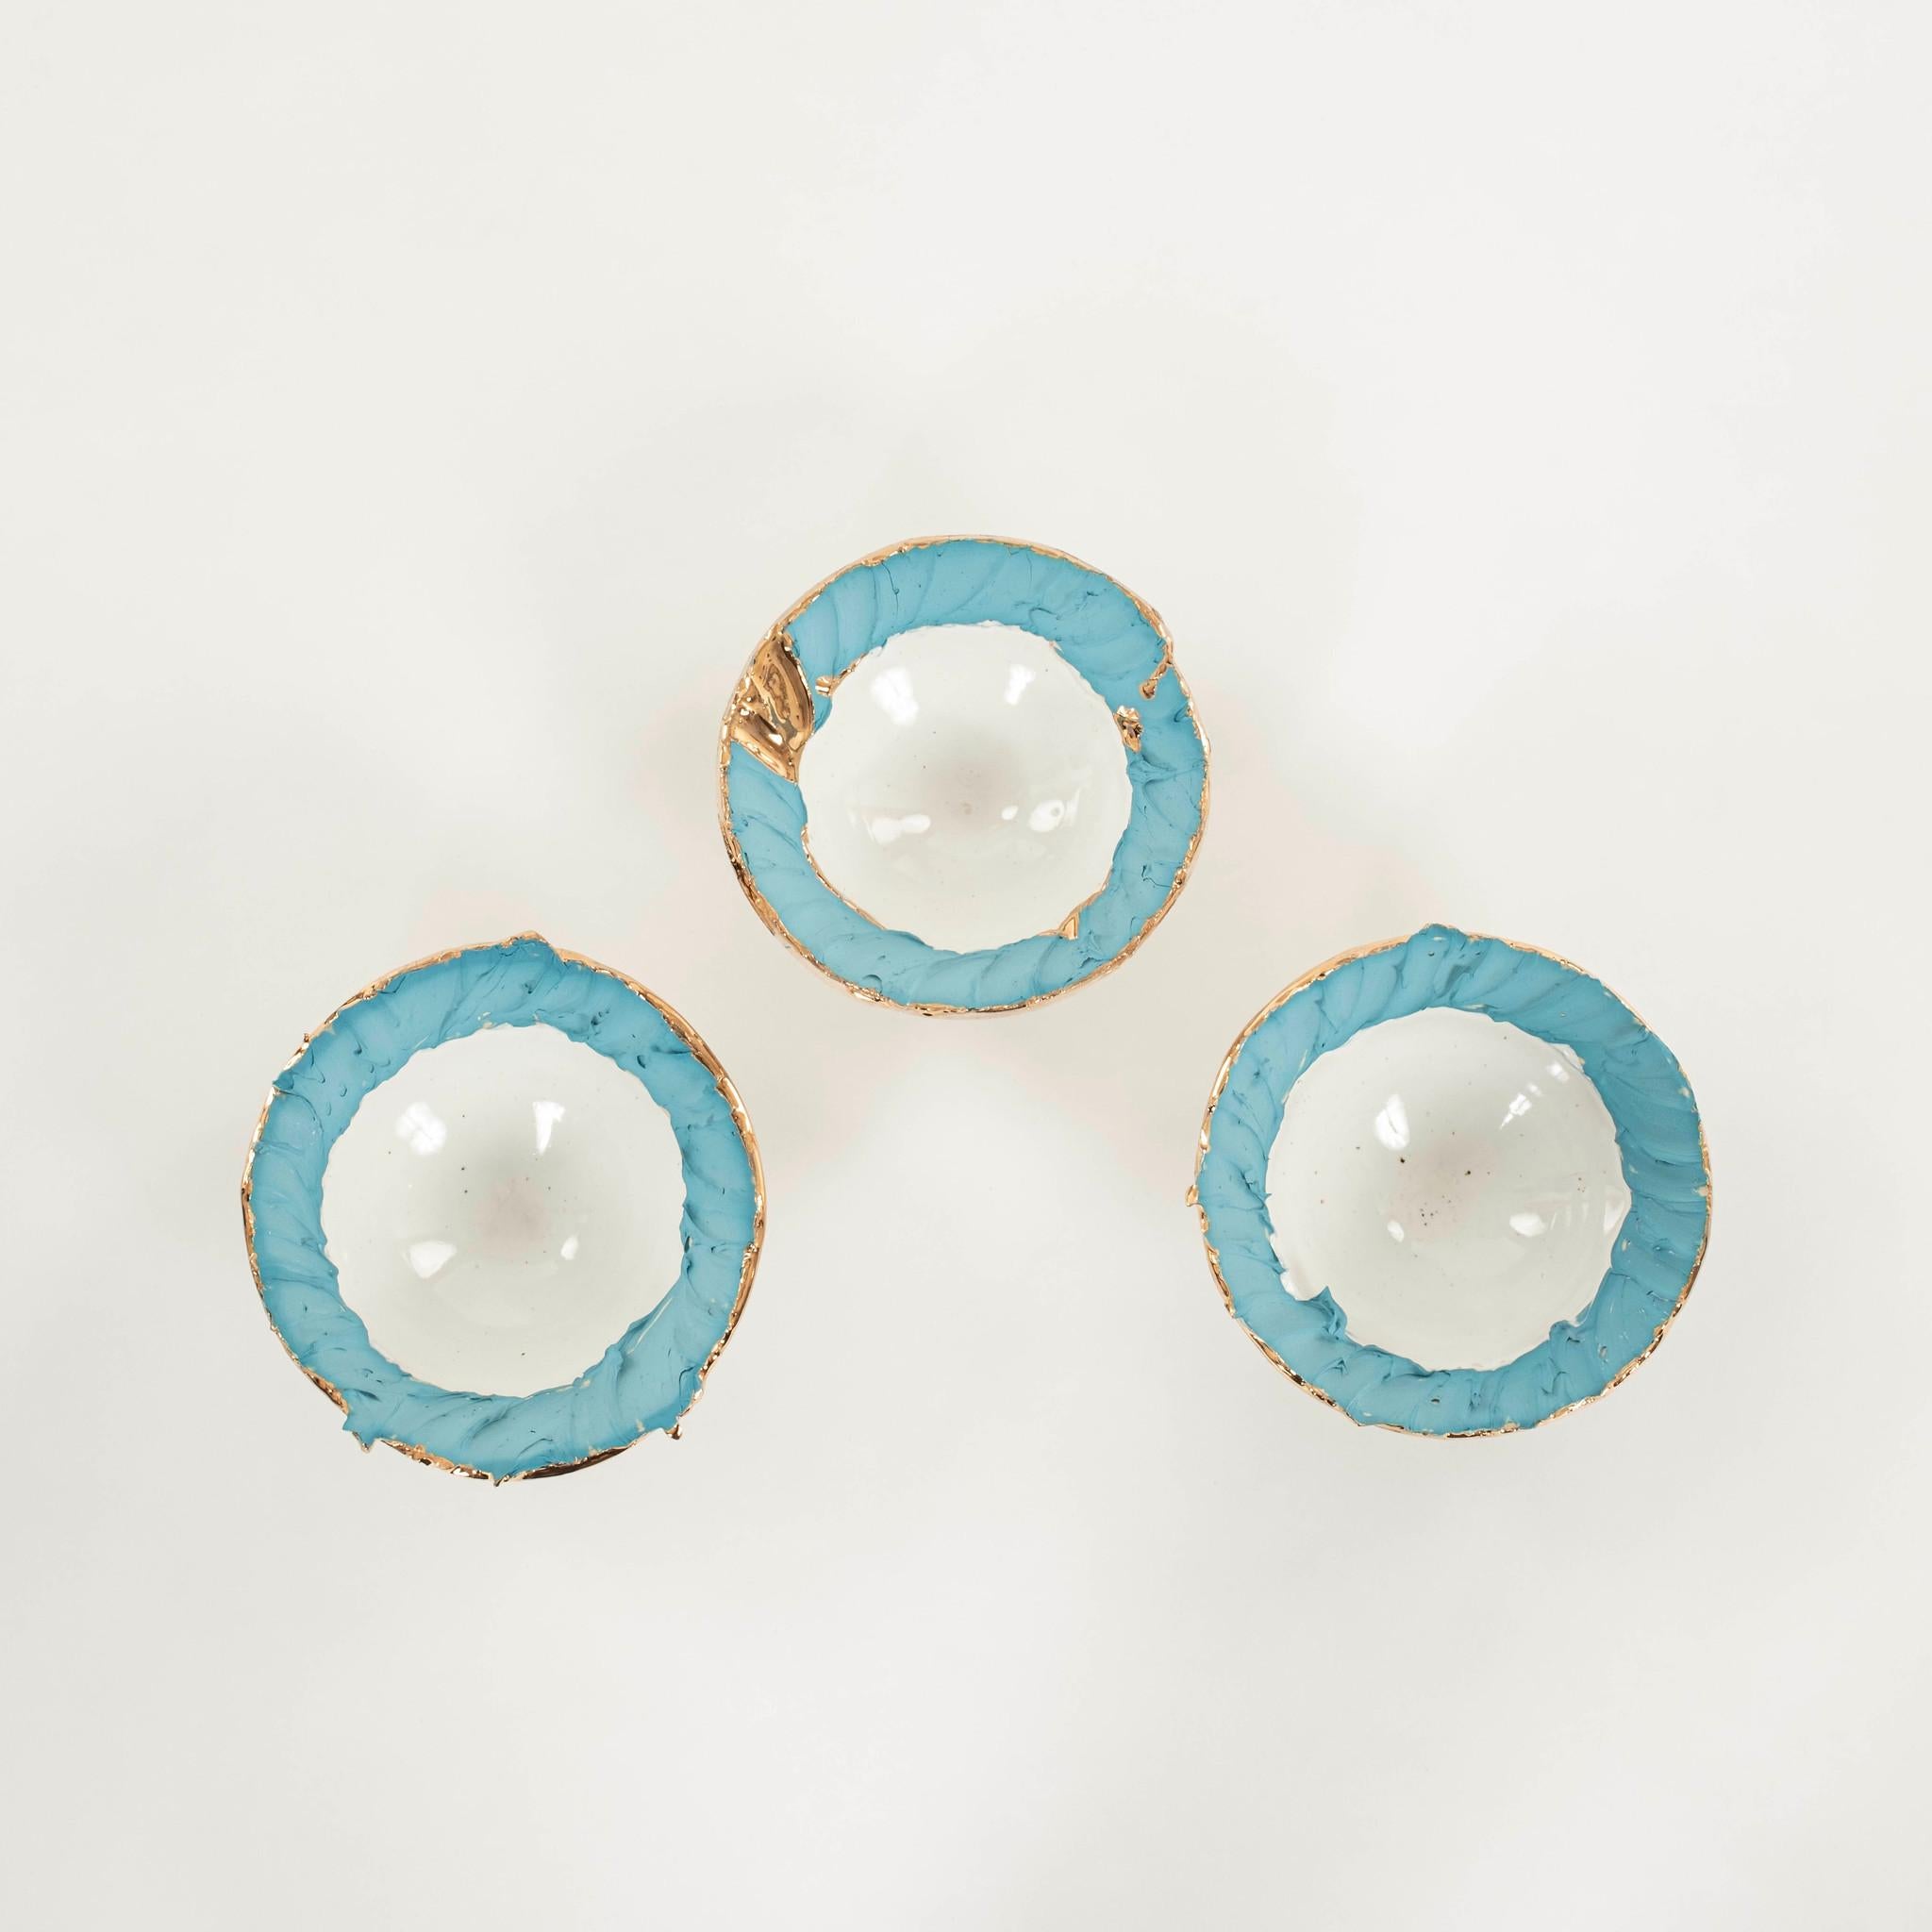 American Bleu Patisse Confetti Porcelain Bowl Chase Gamblin For Sale